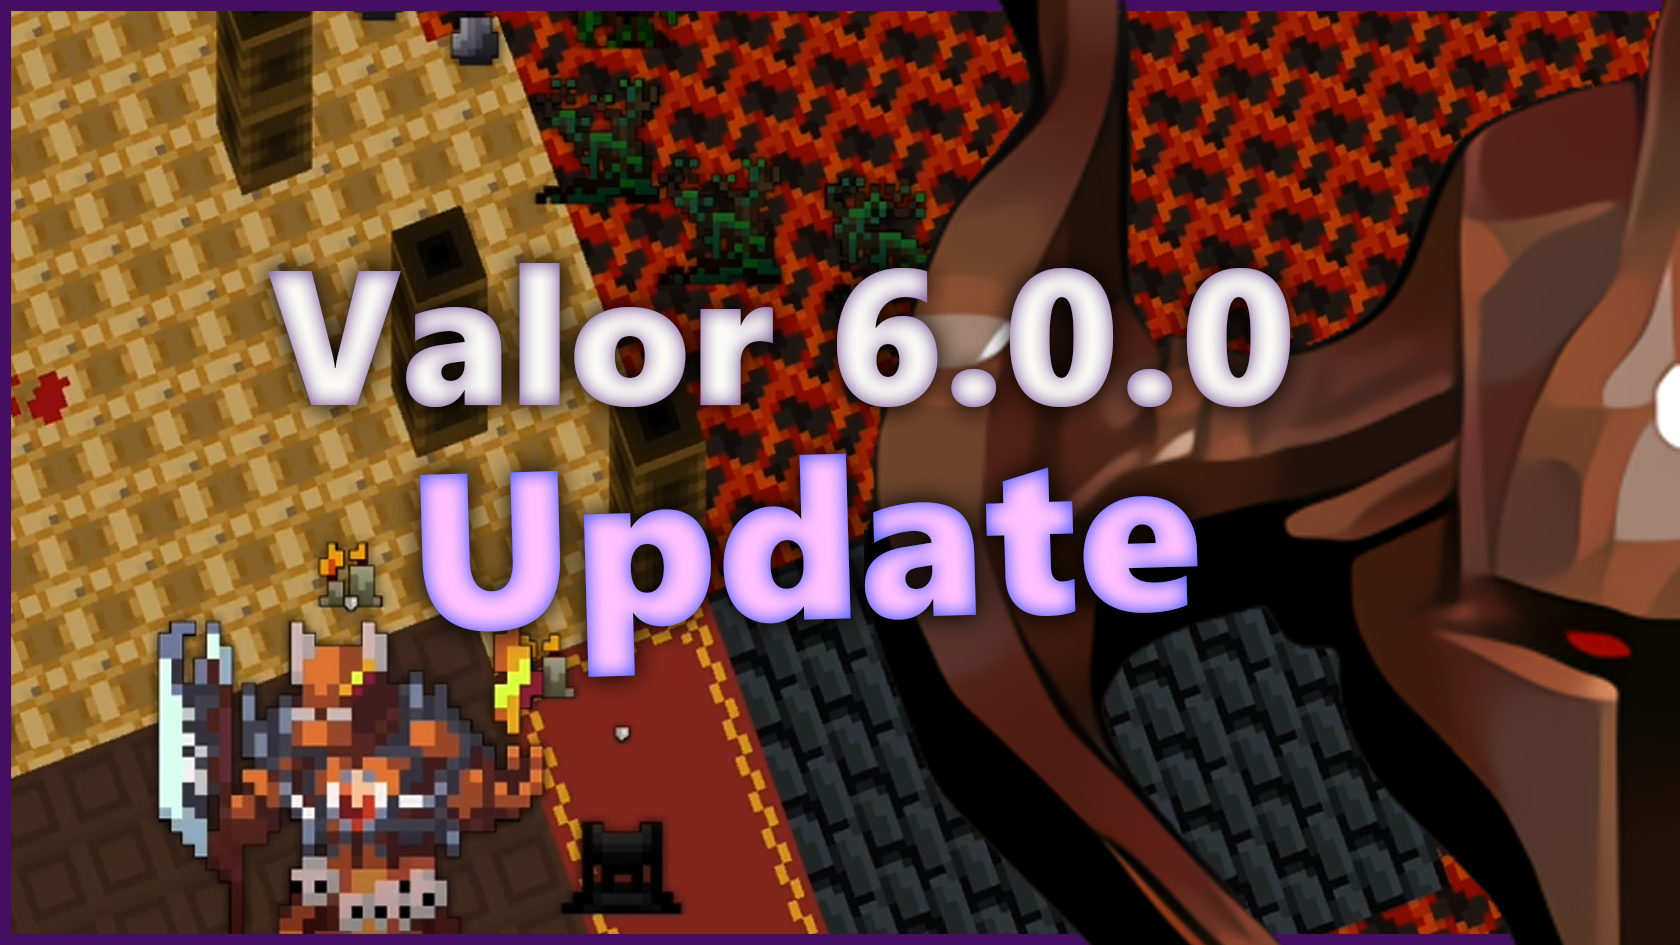 6.0.0 Update